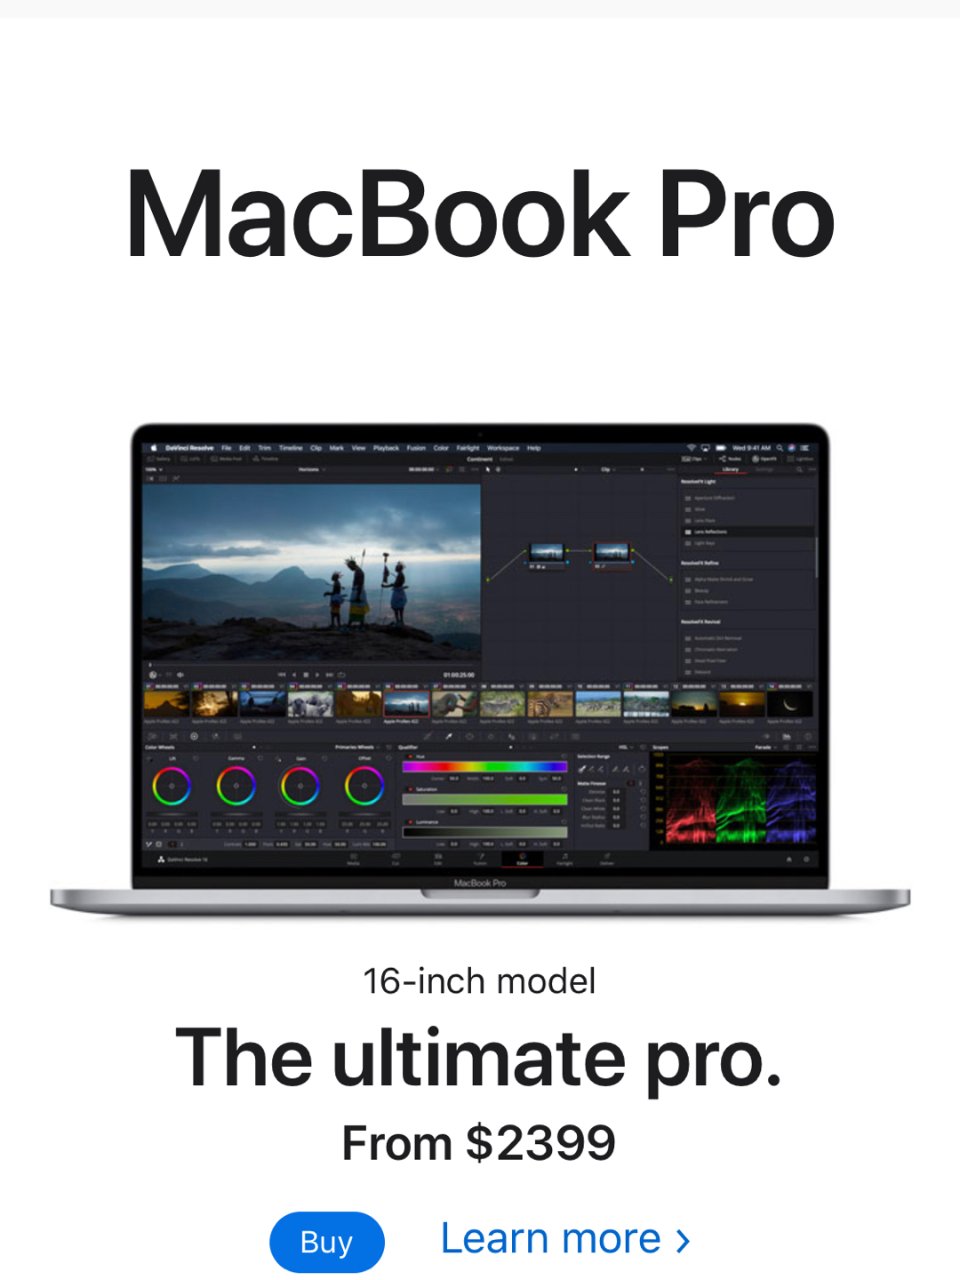 許願 MacBook Pro 